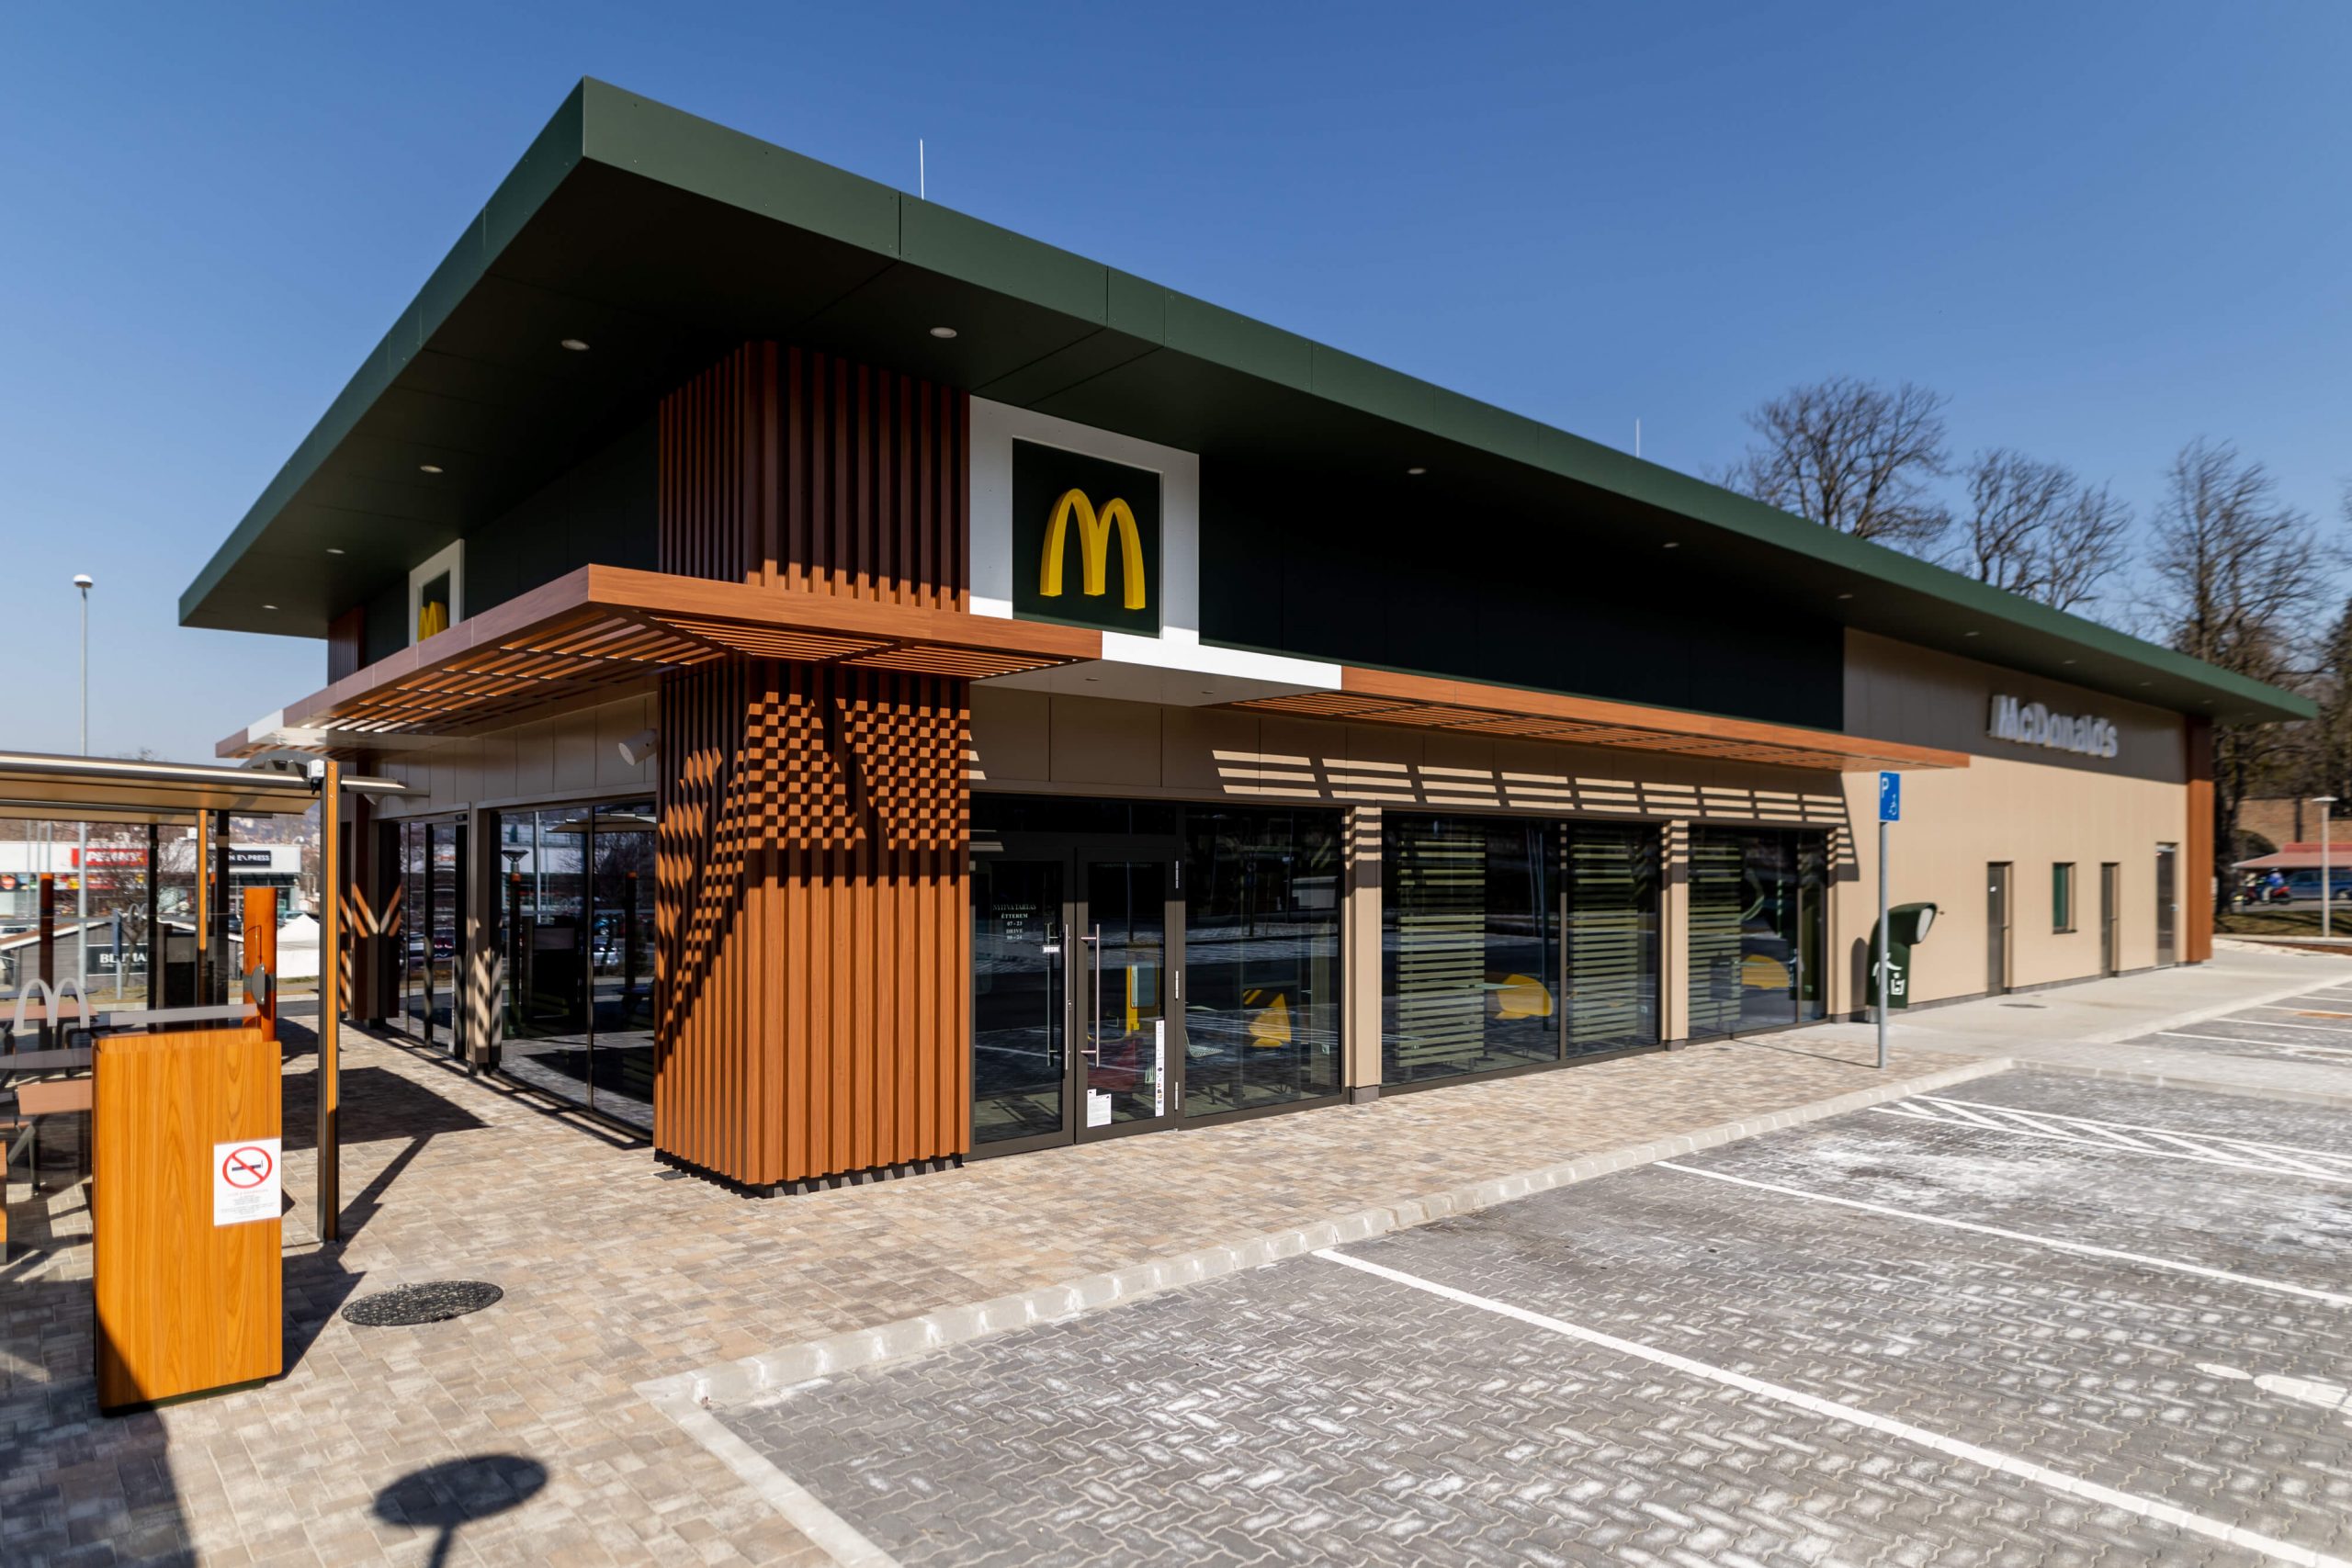 Már 100 McDonald’s étterem várja a vendégeket országszerte